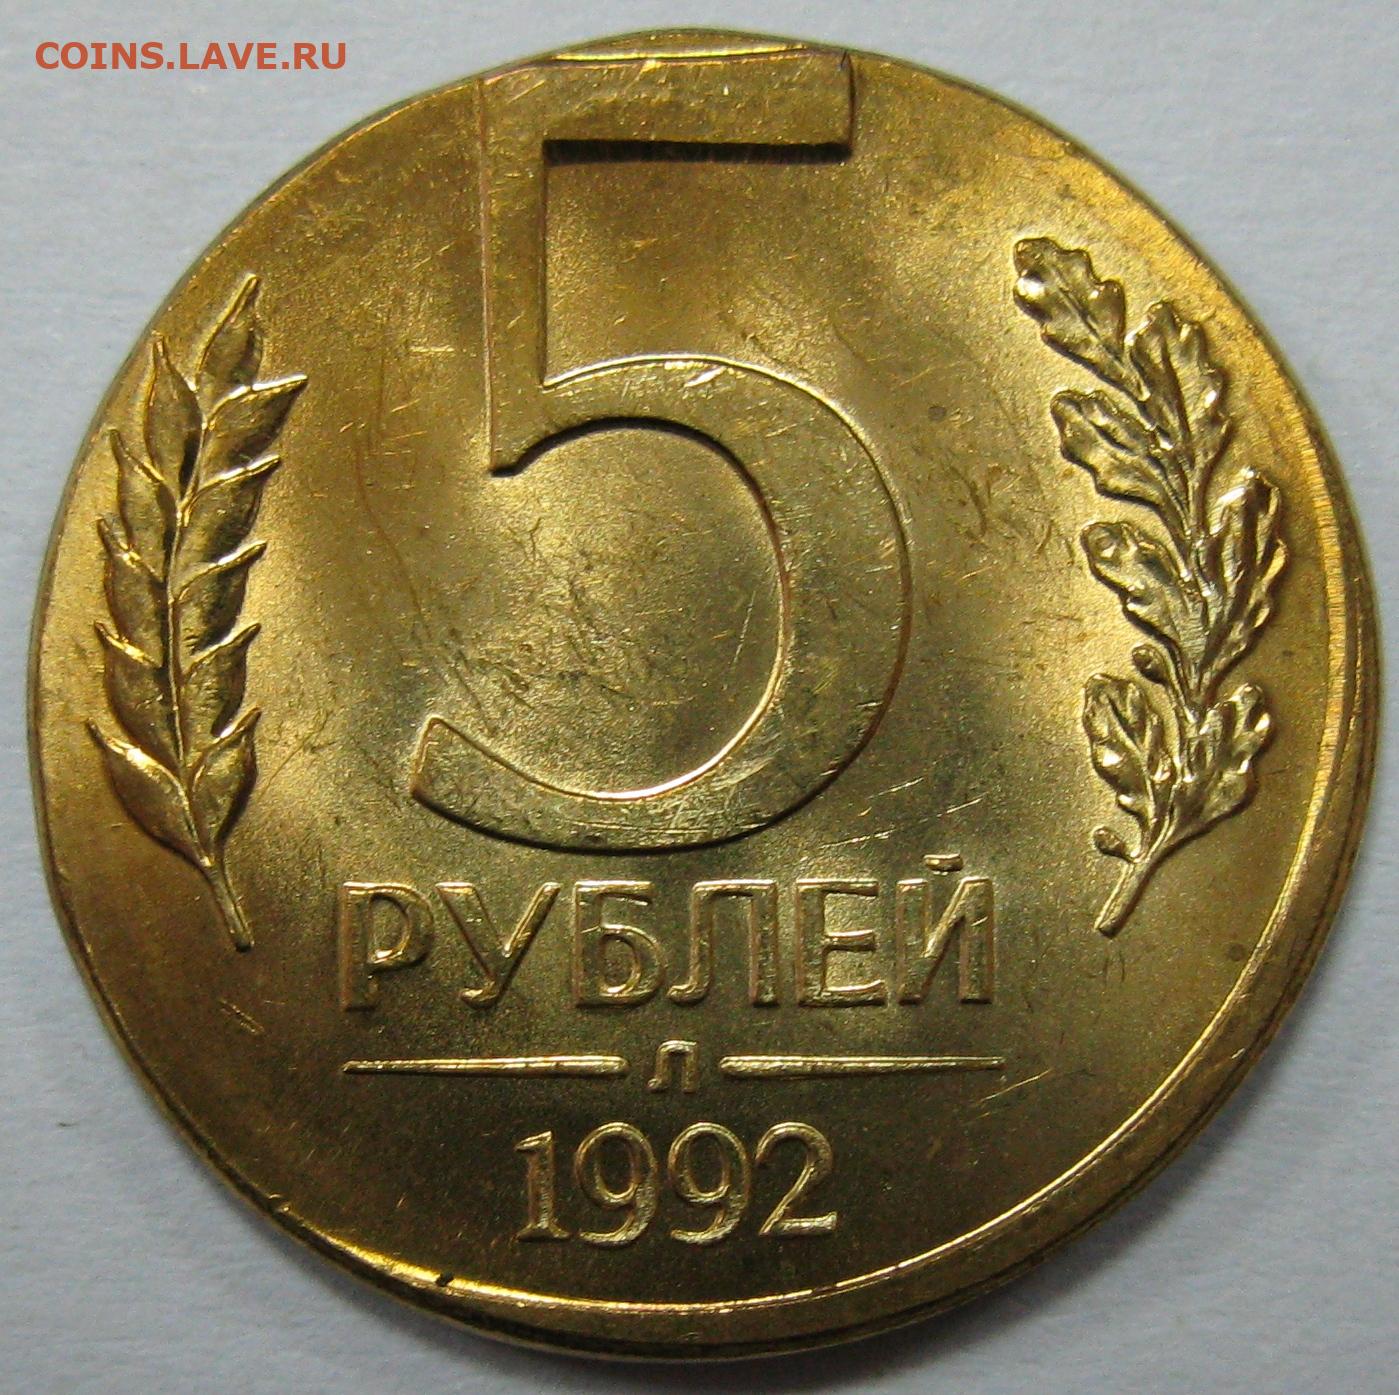 5 рублей 1992 л